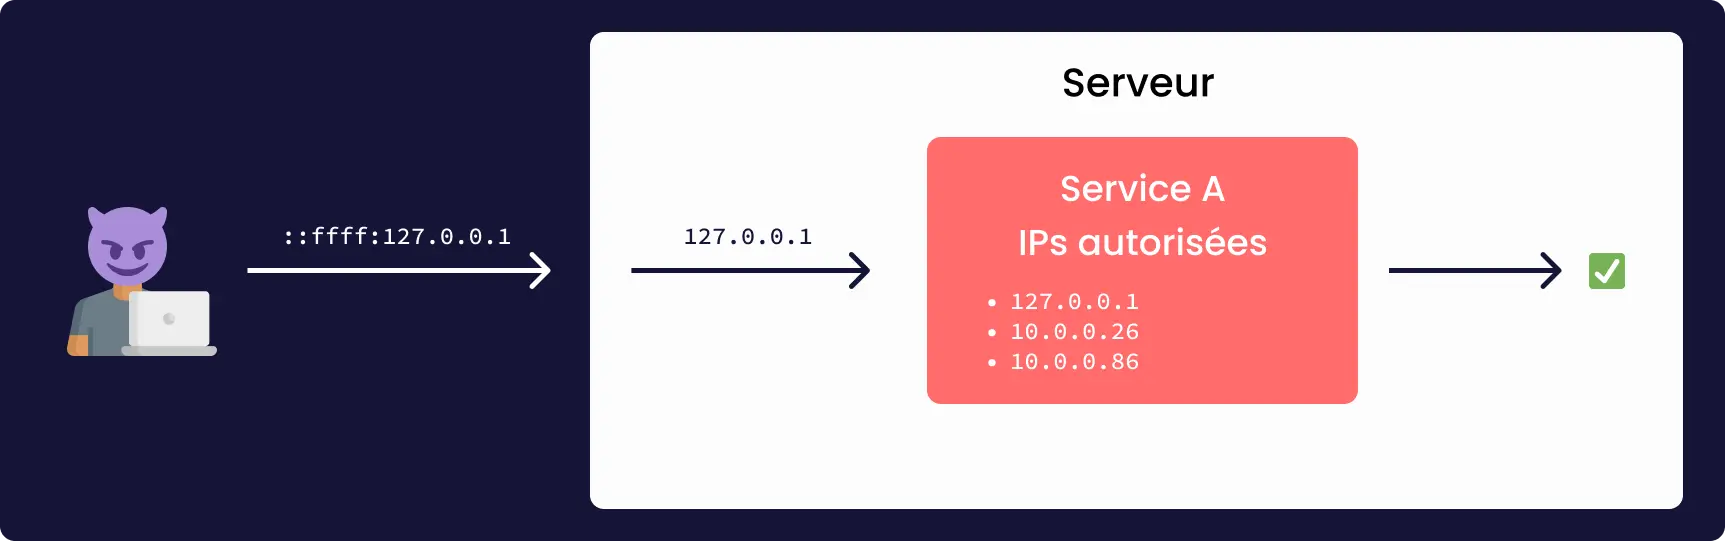 Schéma décrivant une attaque type utilisant une adresse IPv4 mappée